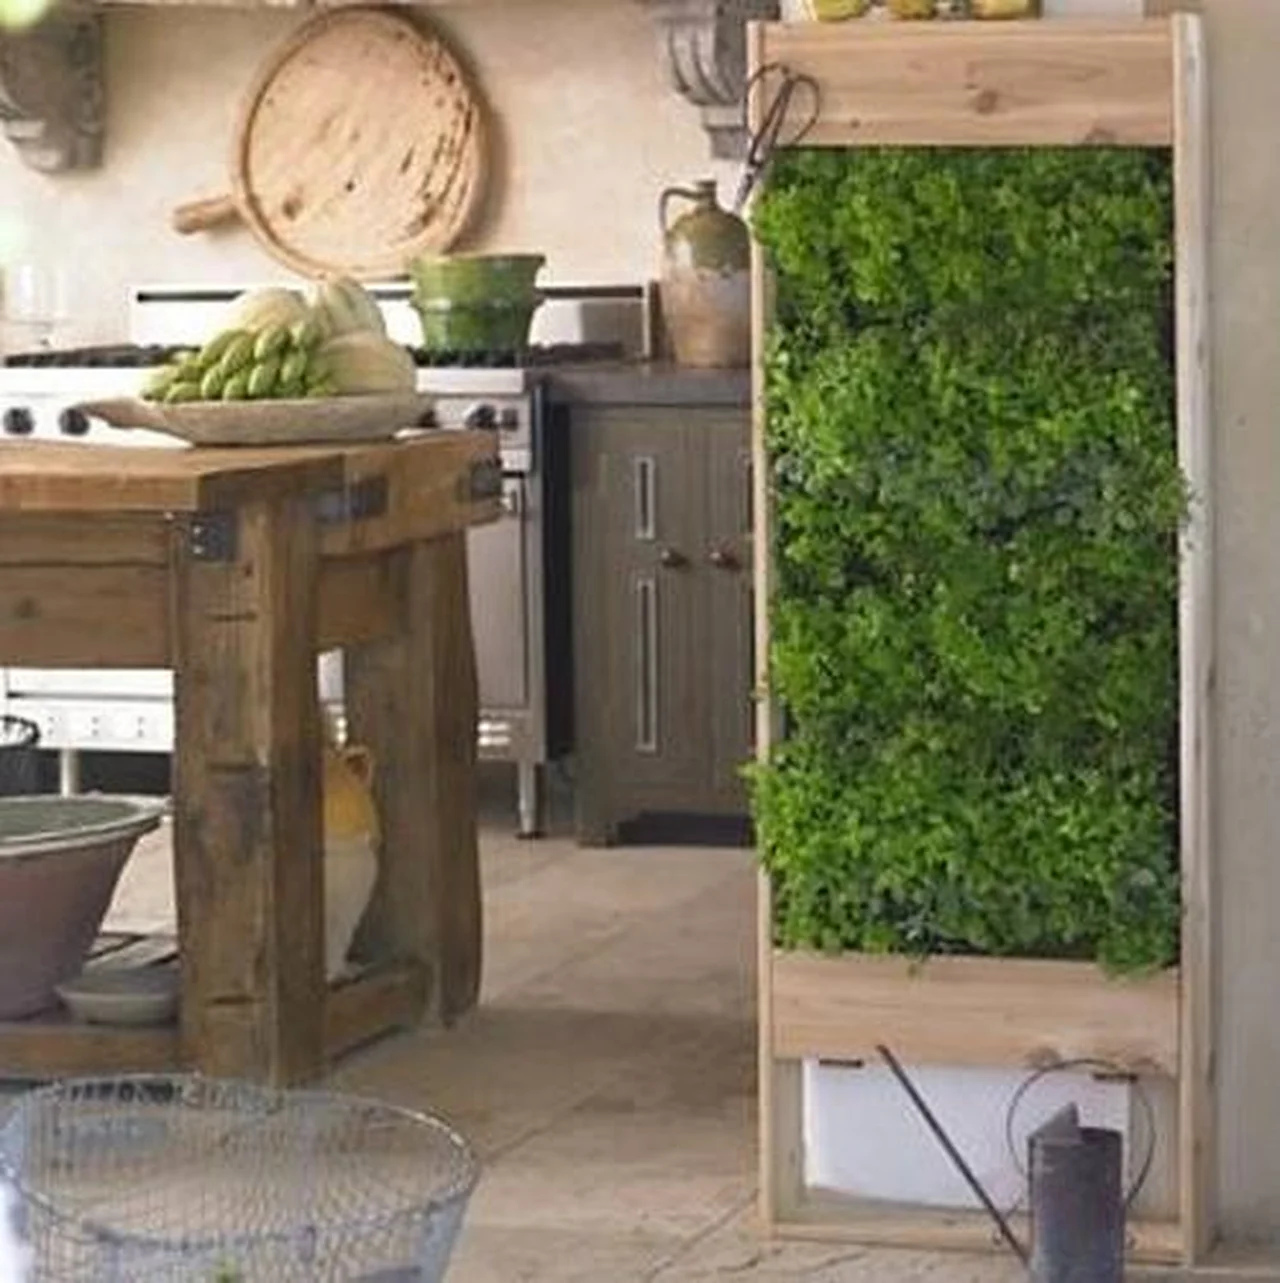 Zielona ściana w kuchni